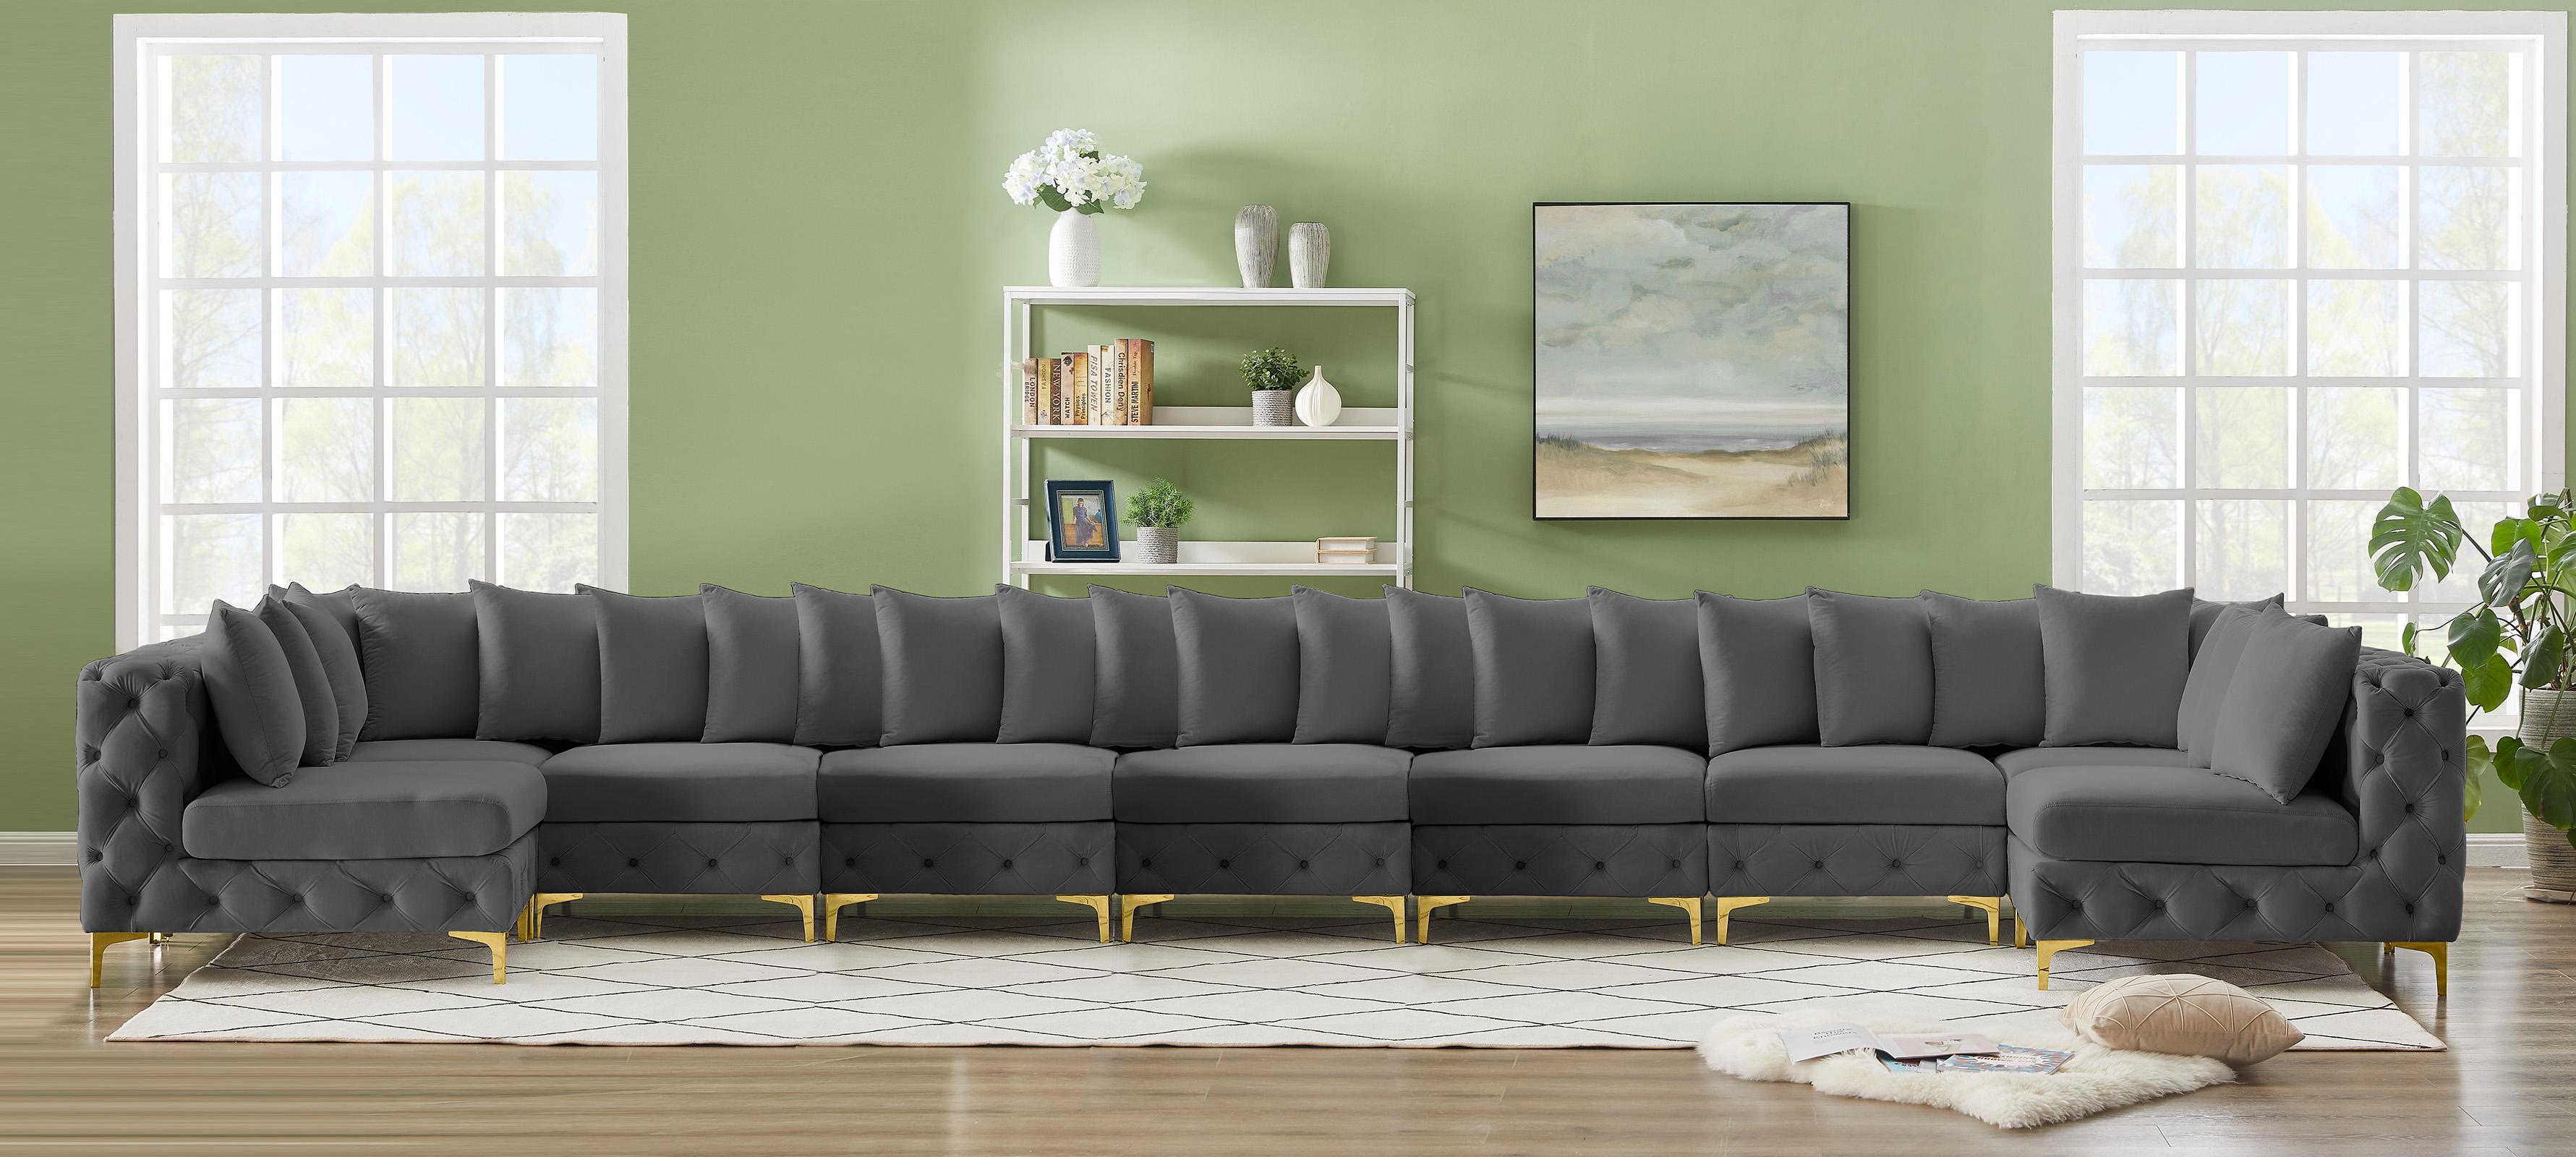 

    
686Grey-Sec9A Meridian Furniture Modular Sectional Sofa
